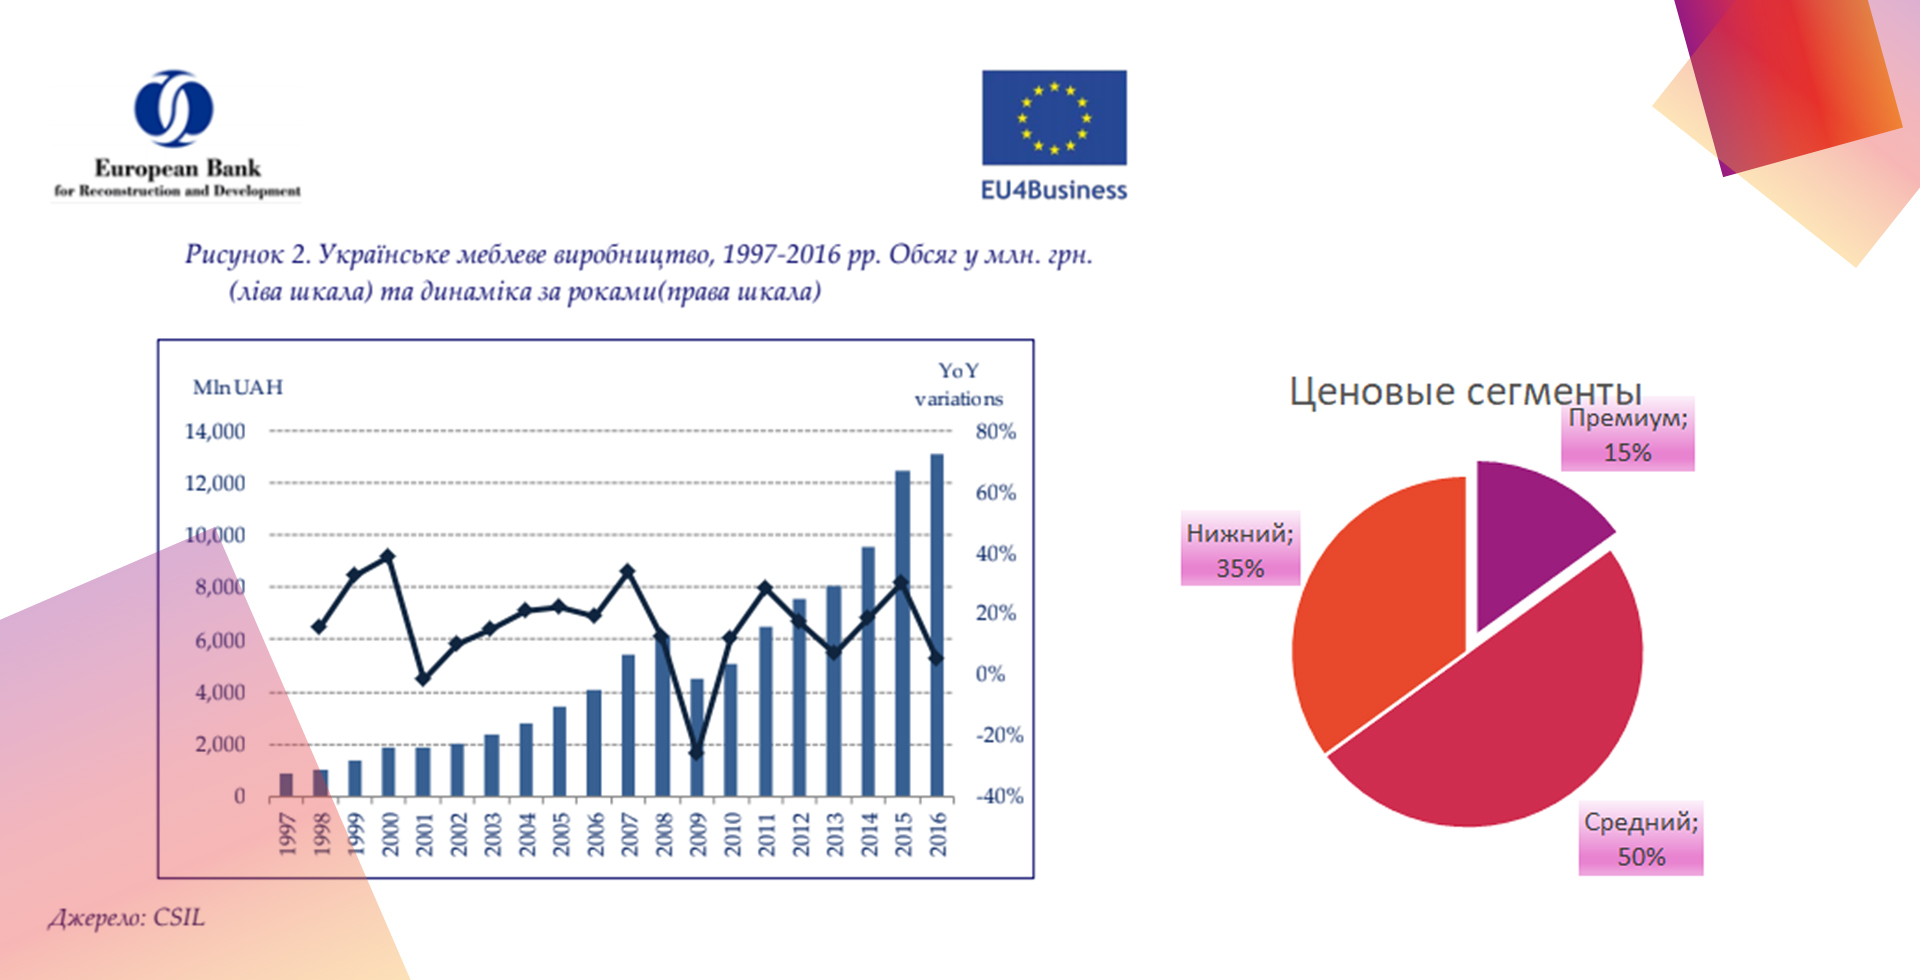 Обсяг меблевого ринку в Україні та сегмантация